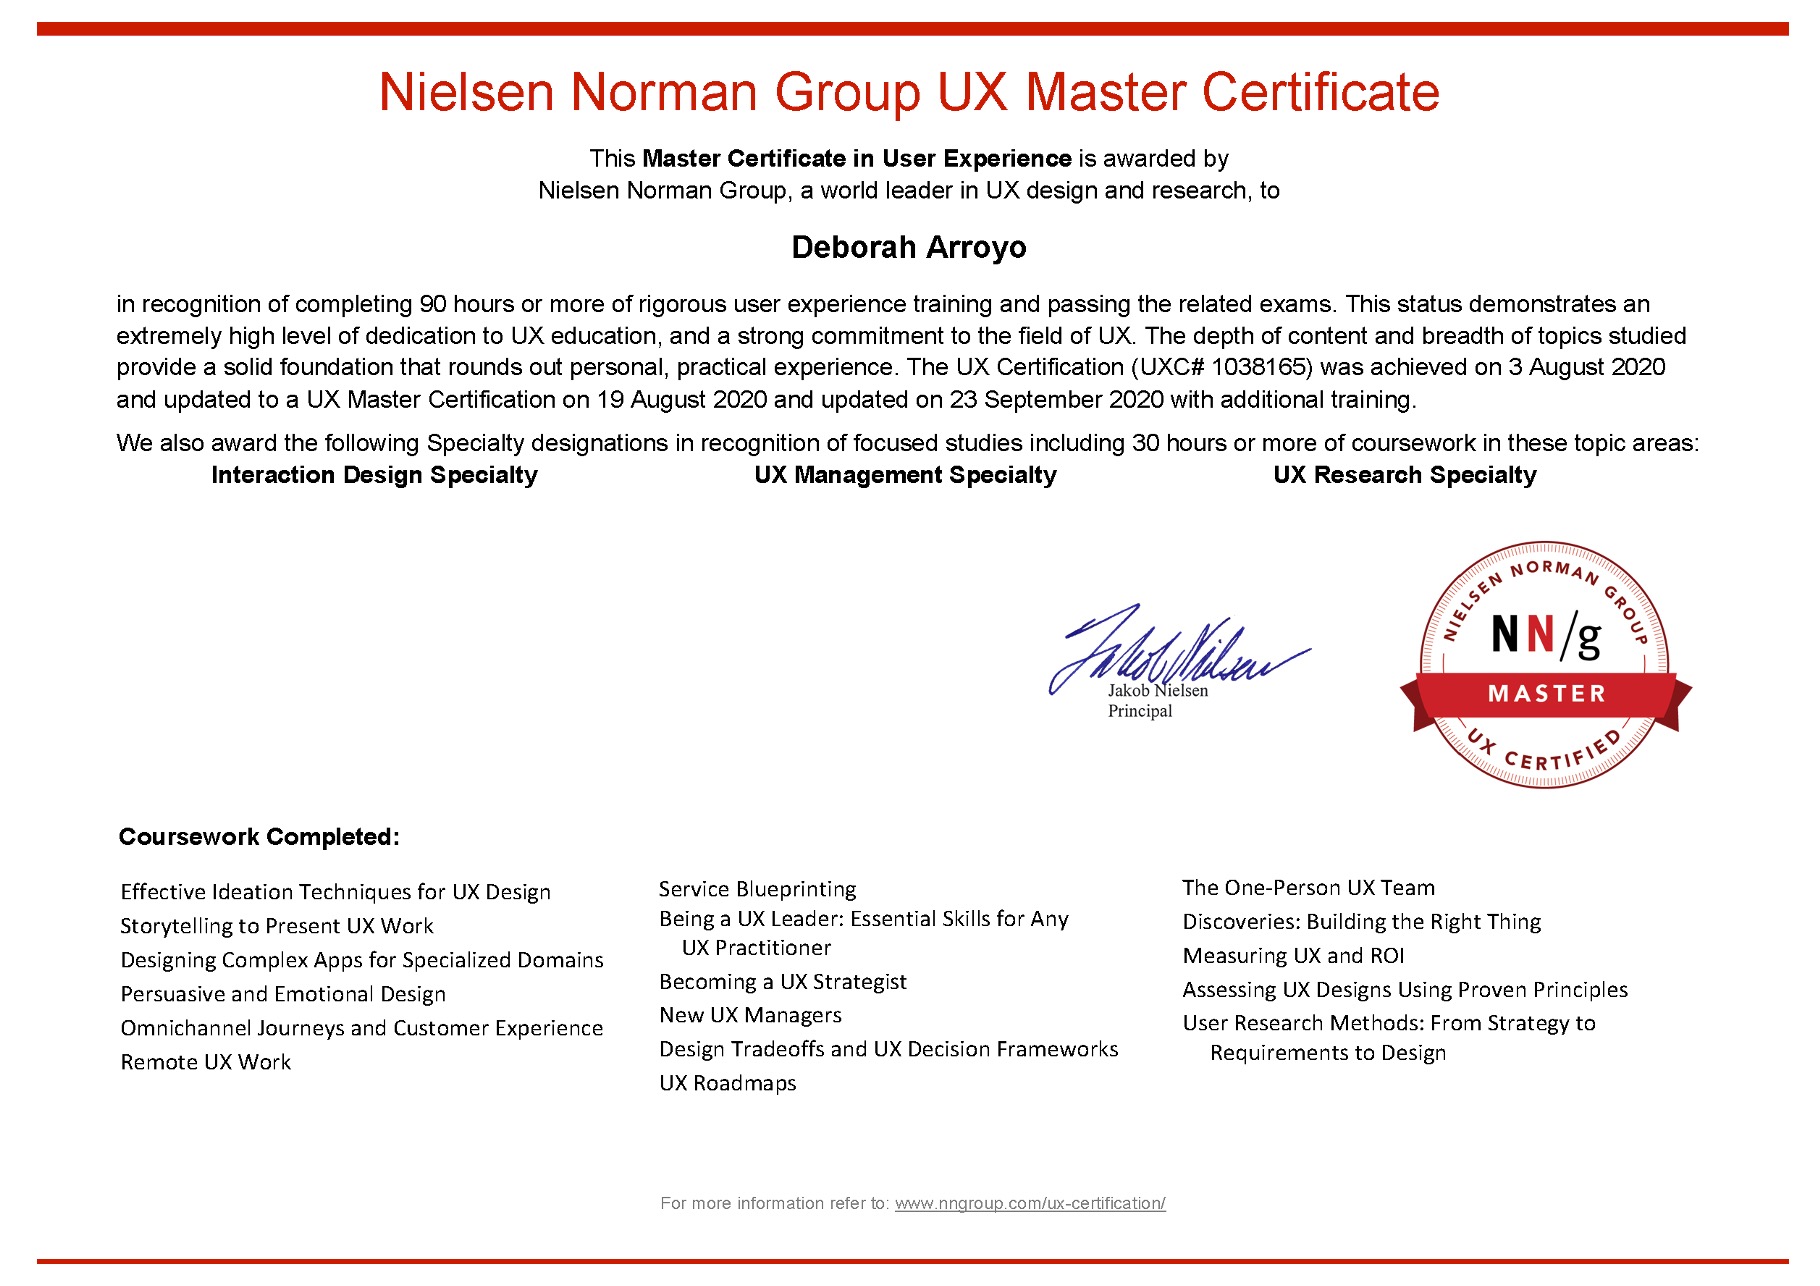 NN/g UX Master Certification